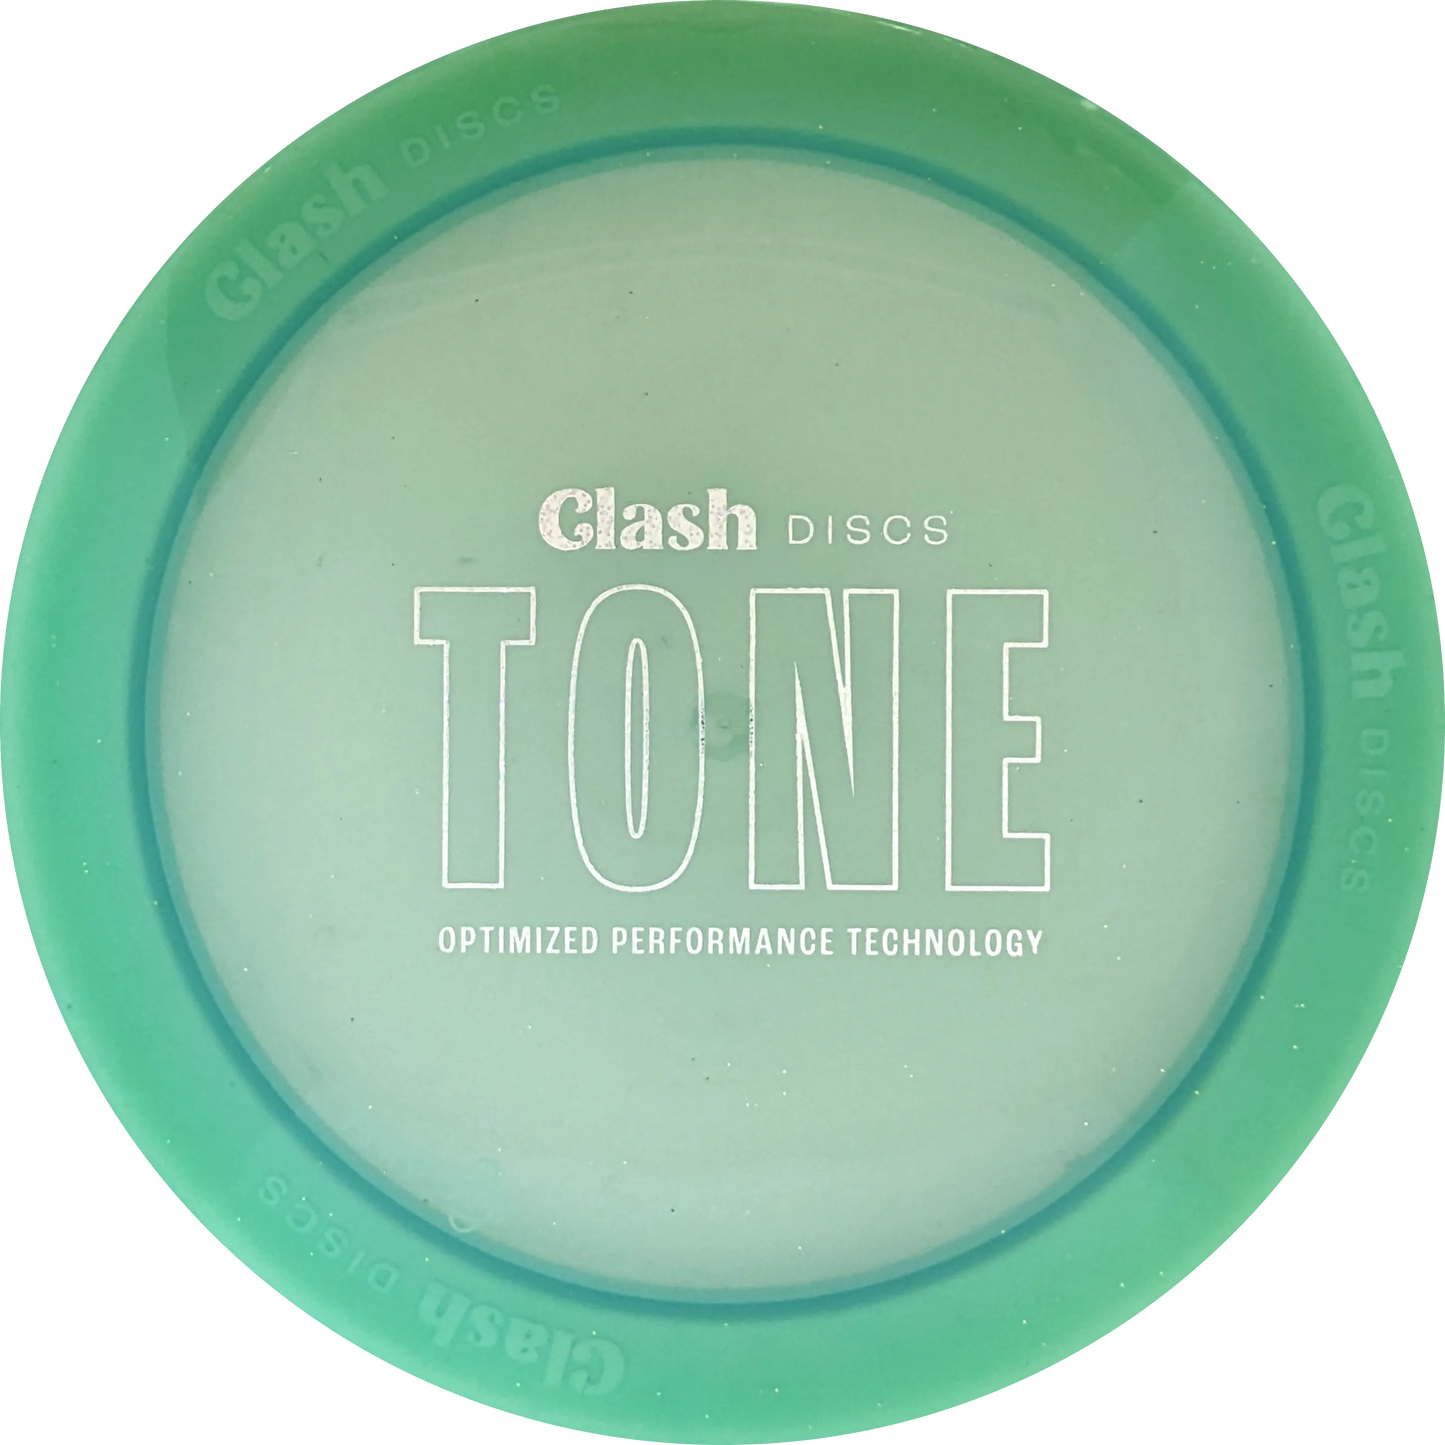 Tone Salt